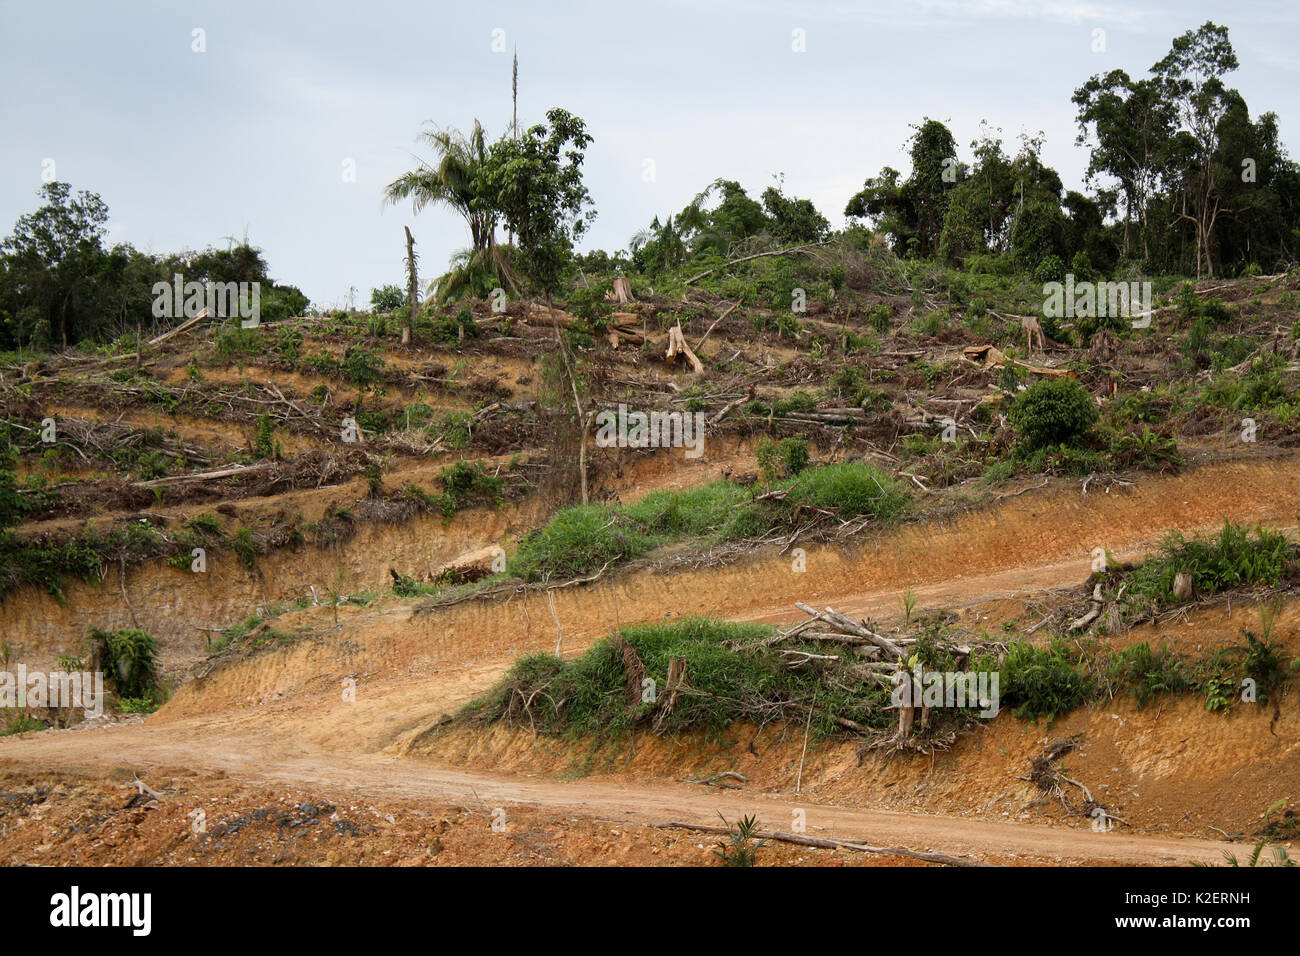 Bereich Rodungen für die Palmölproduktion, Zentralkalimantan, indonesische Borneo. Juni 2010. Stockfoto